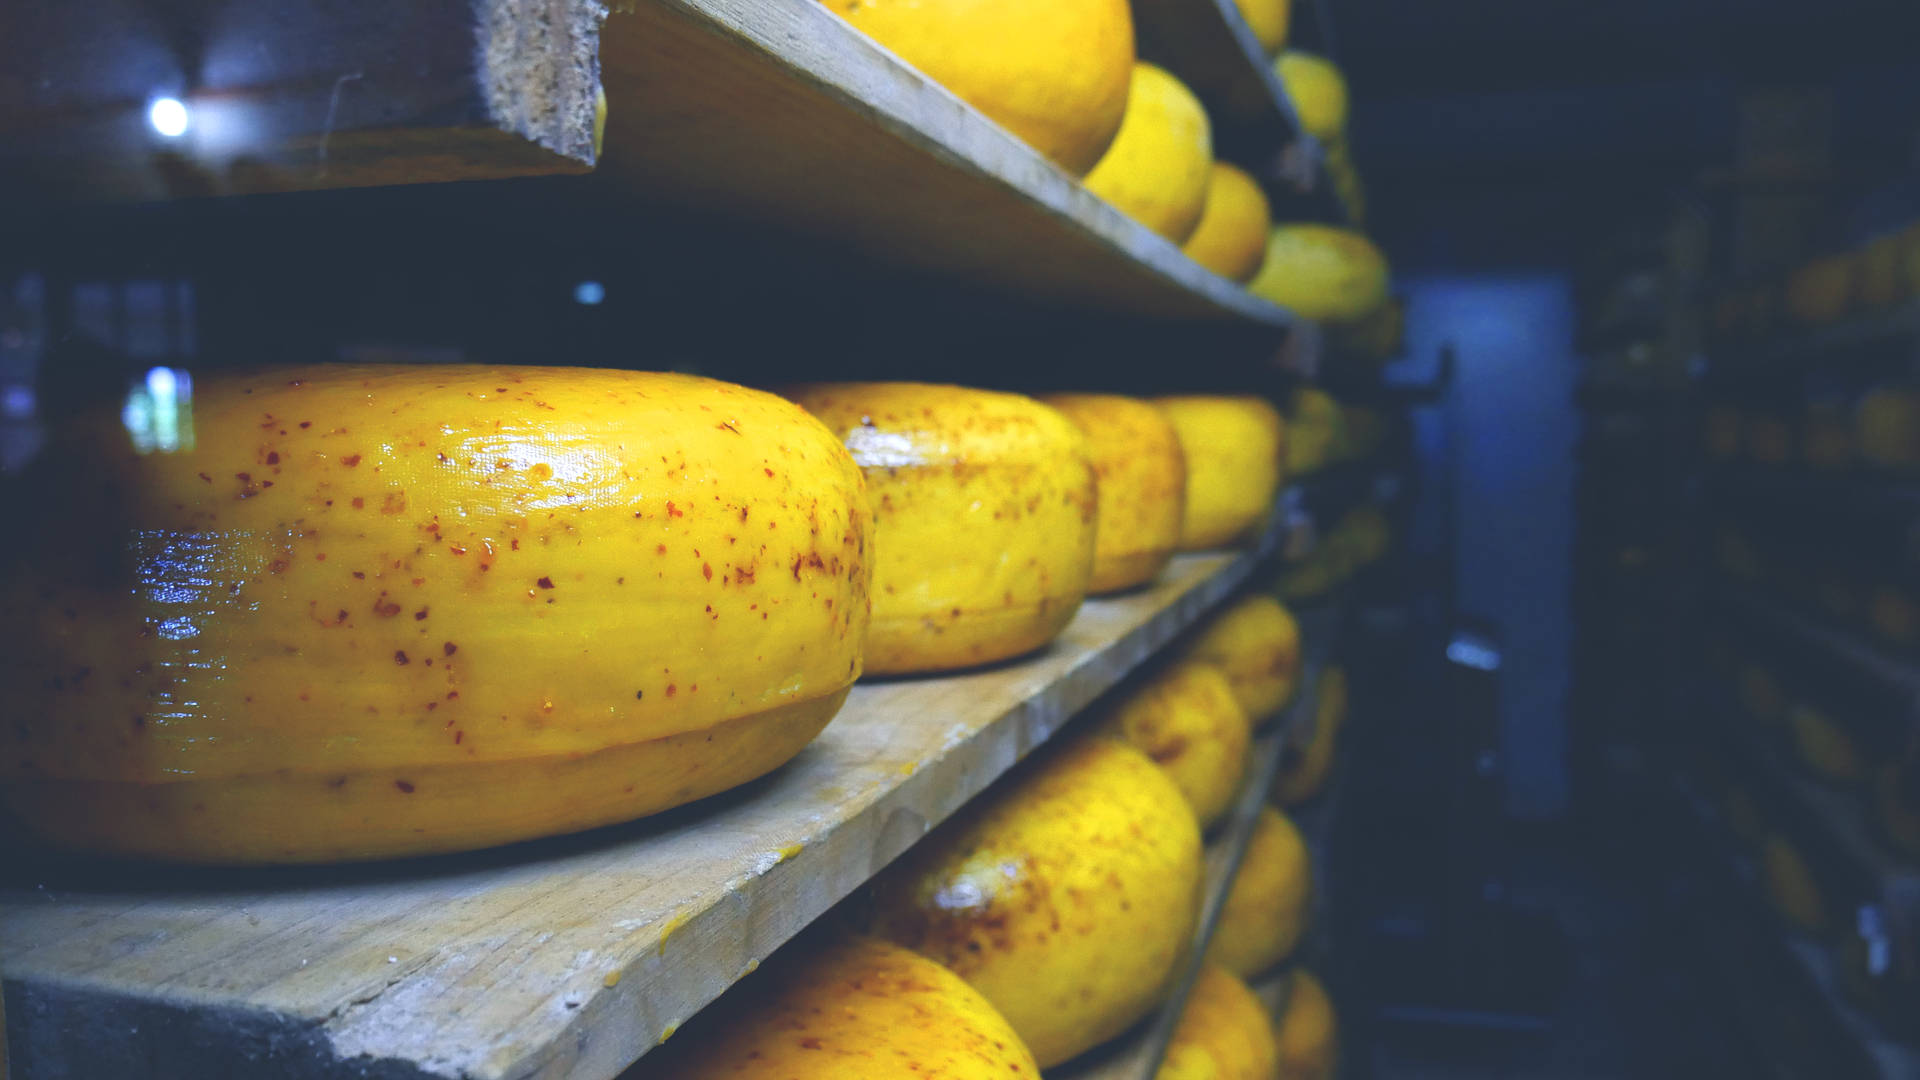 Round Cheese Storage Room Background